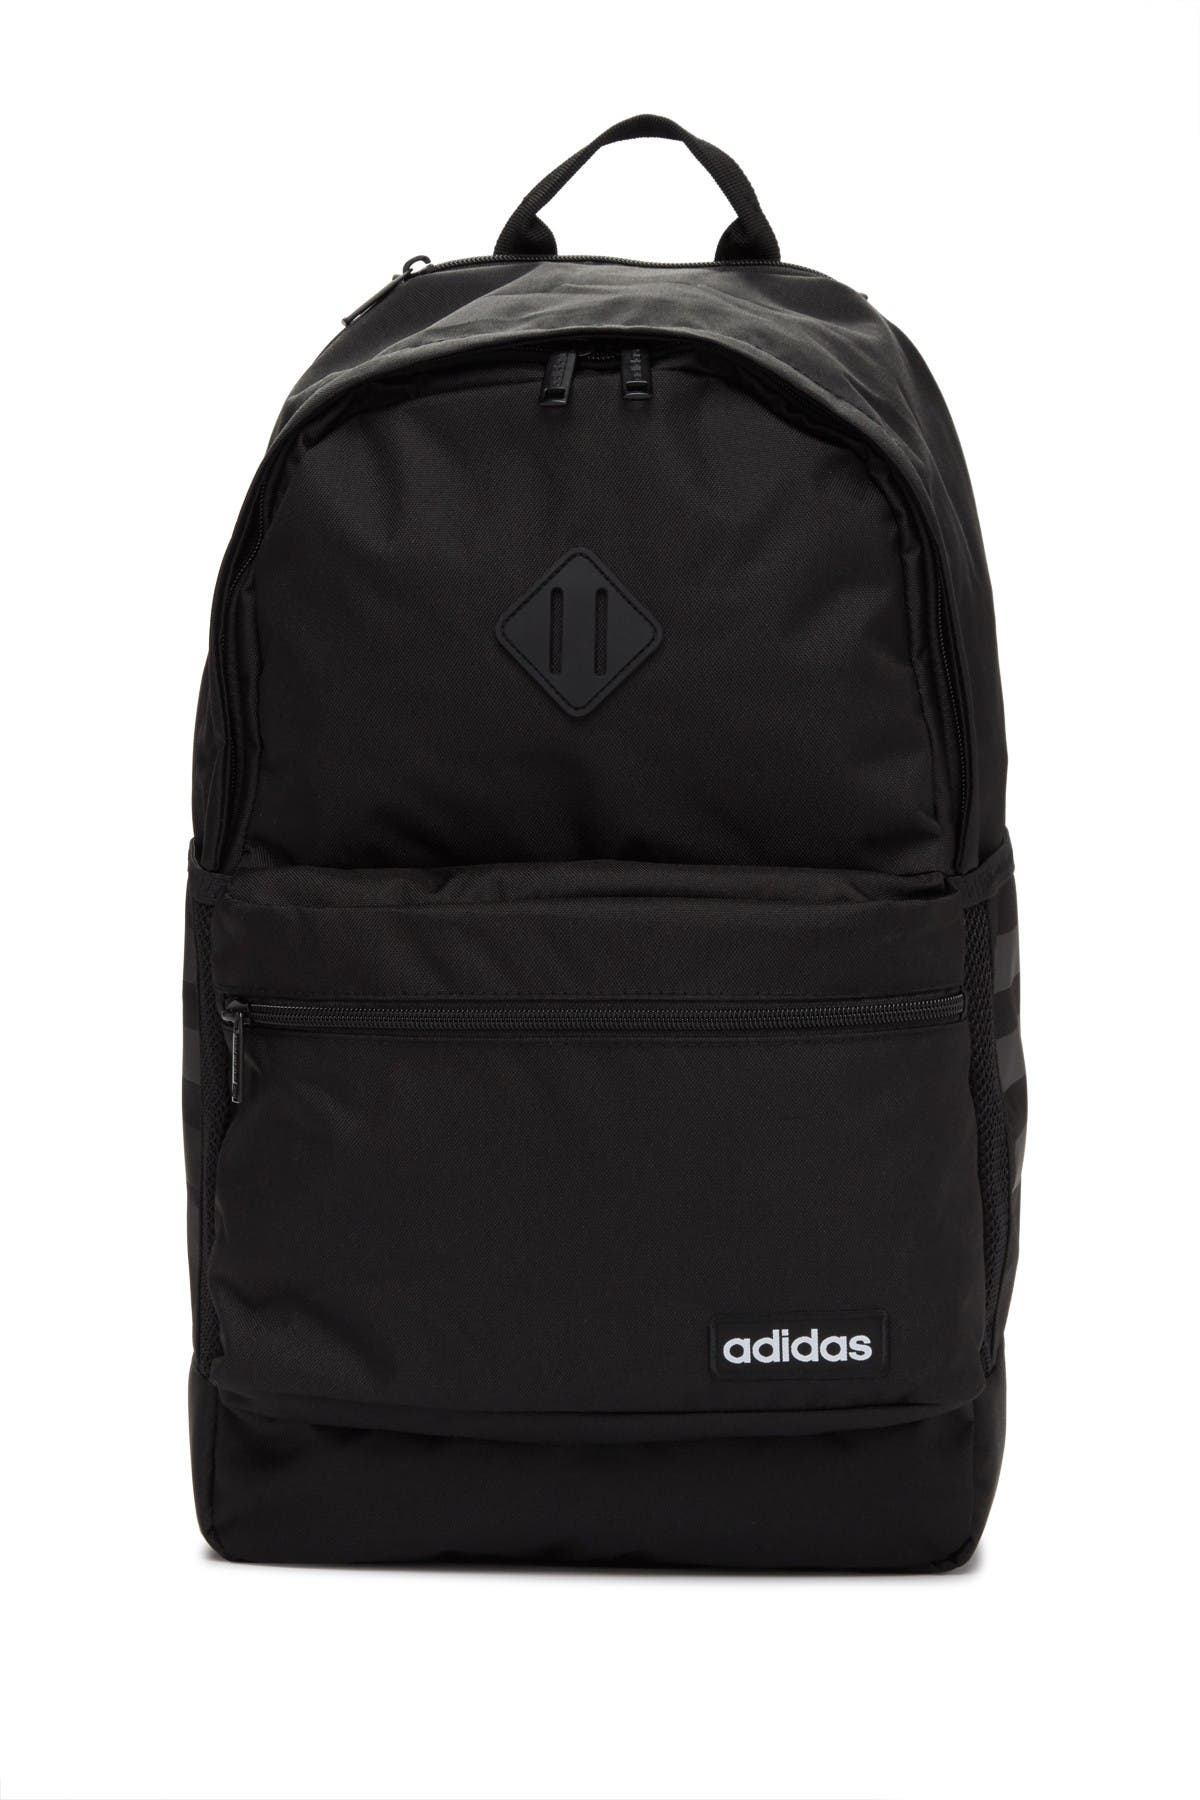 adidas classic 3s ii backpack white